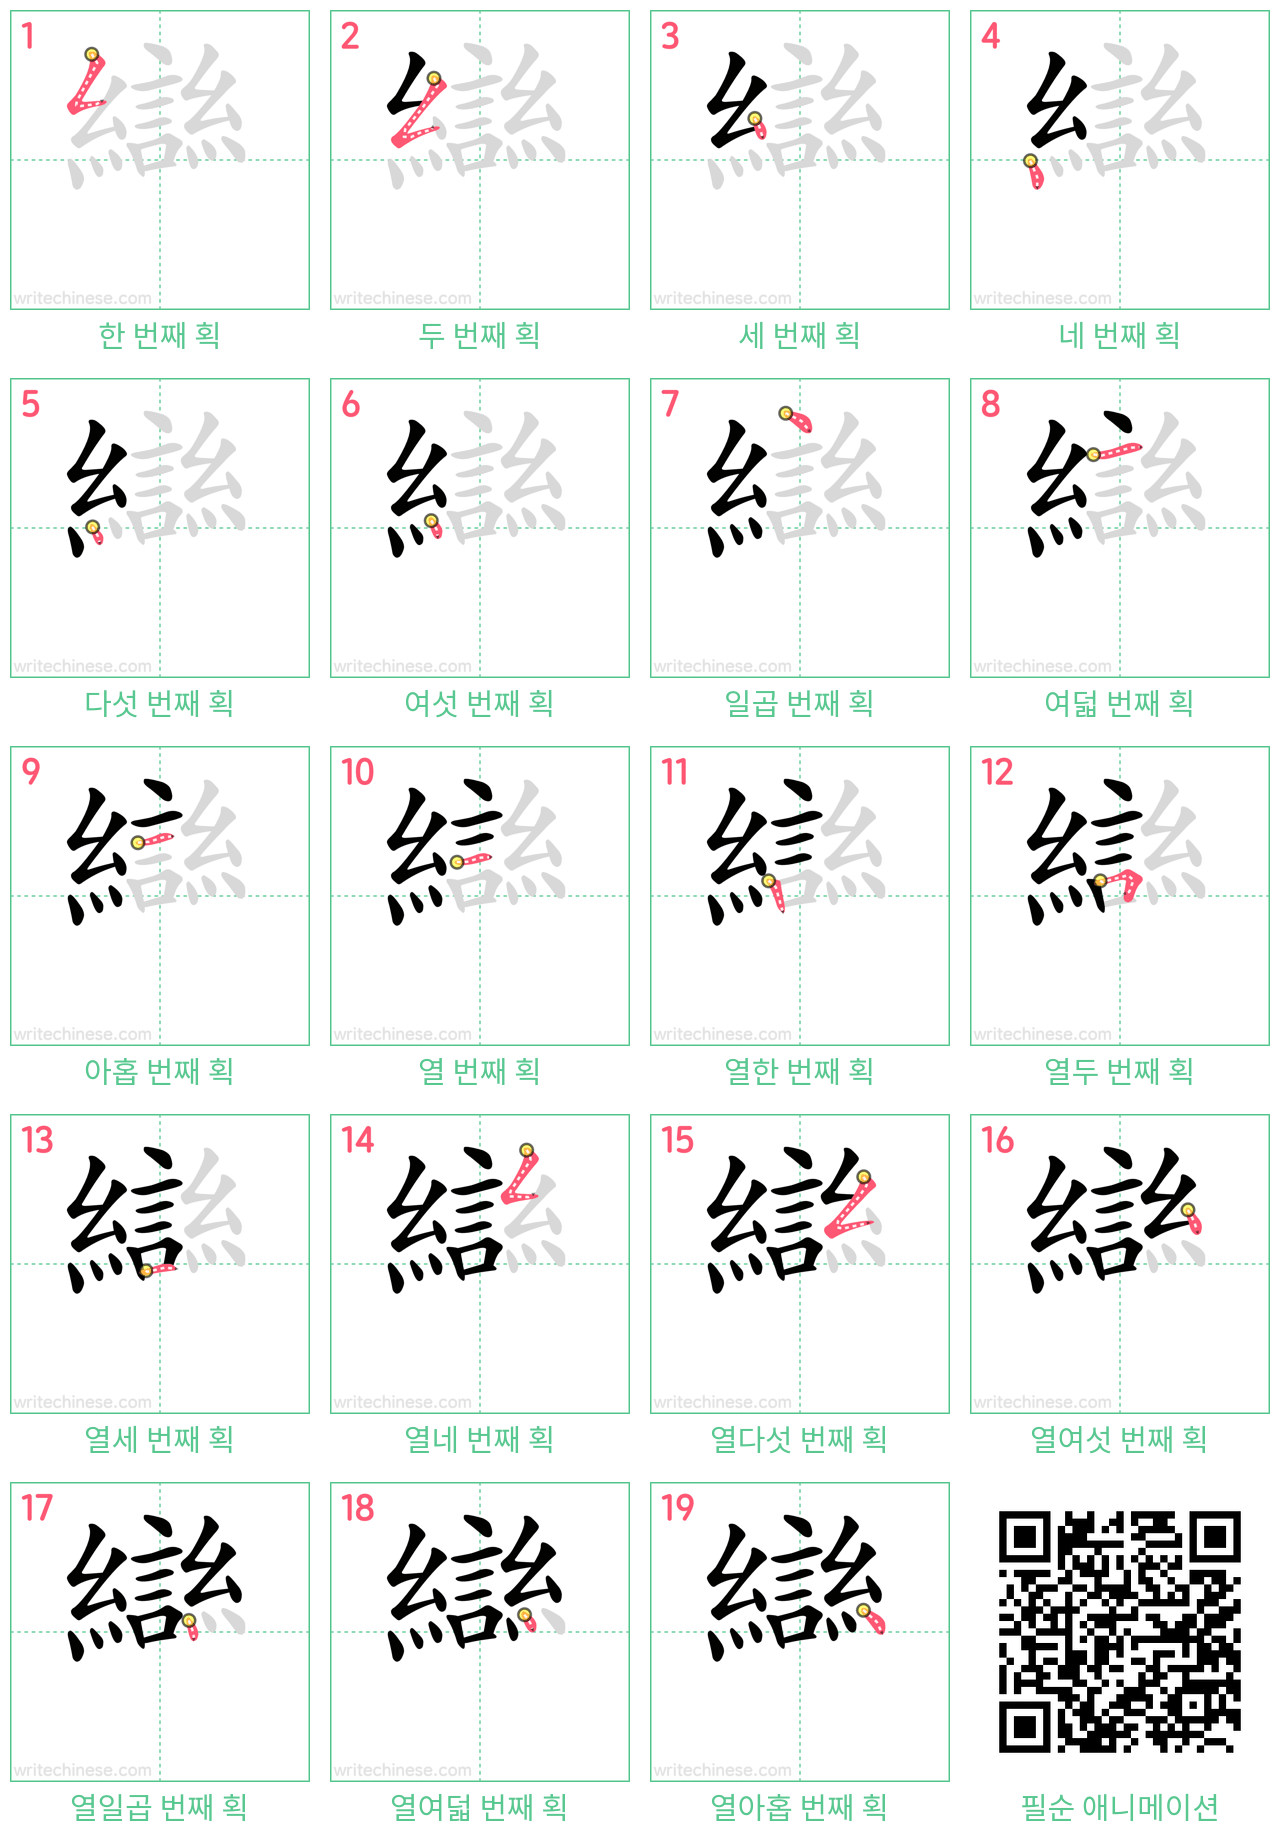 䜌 step-by-step stroke order diagrams